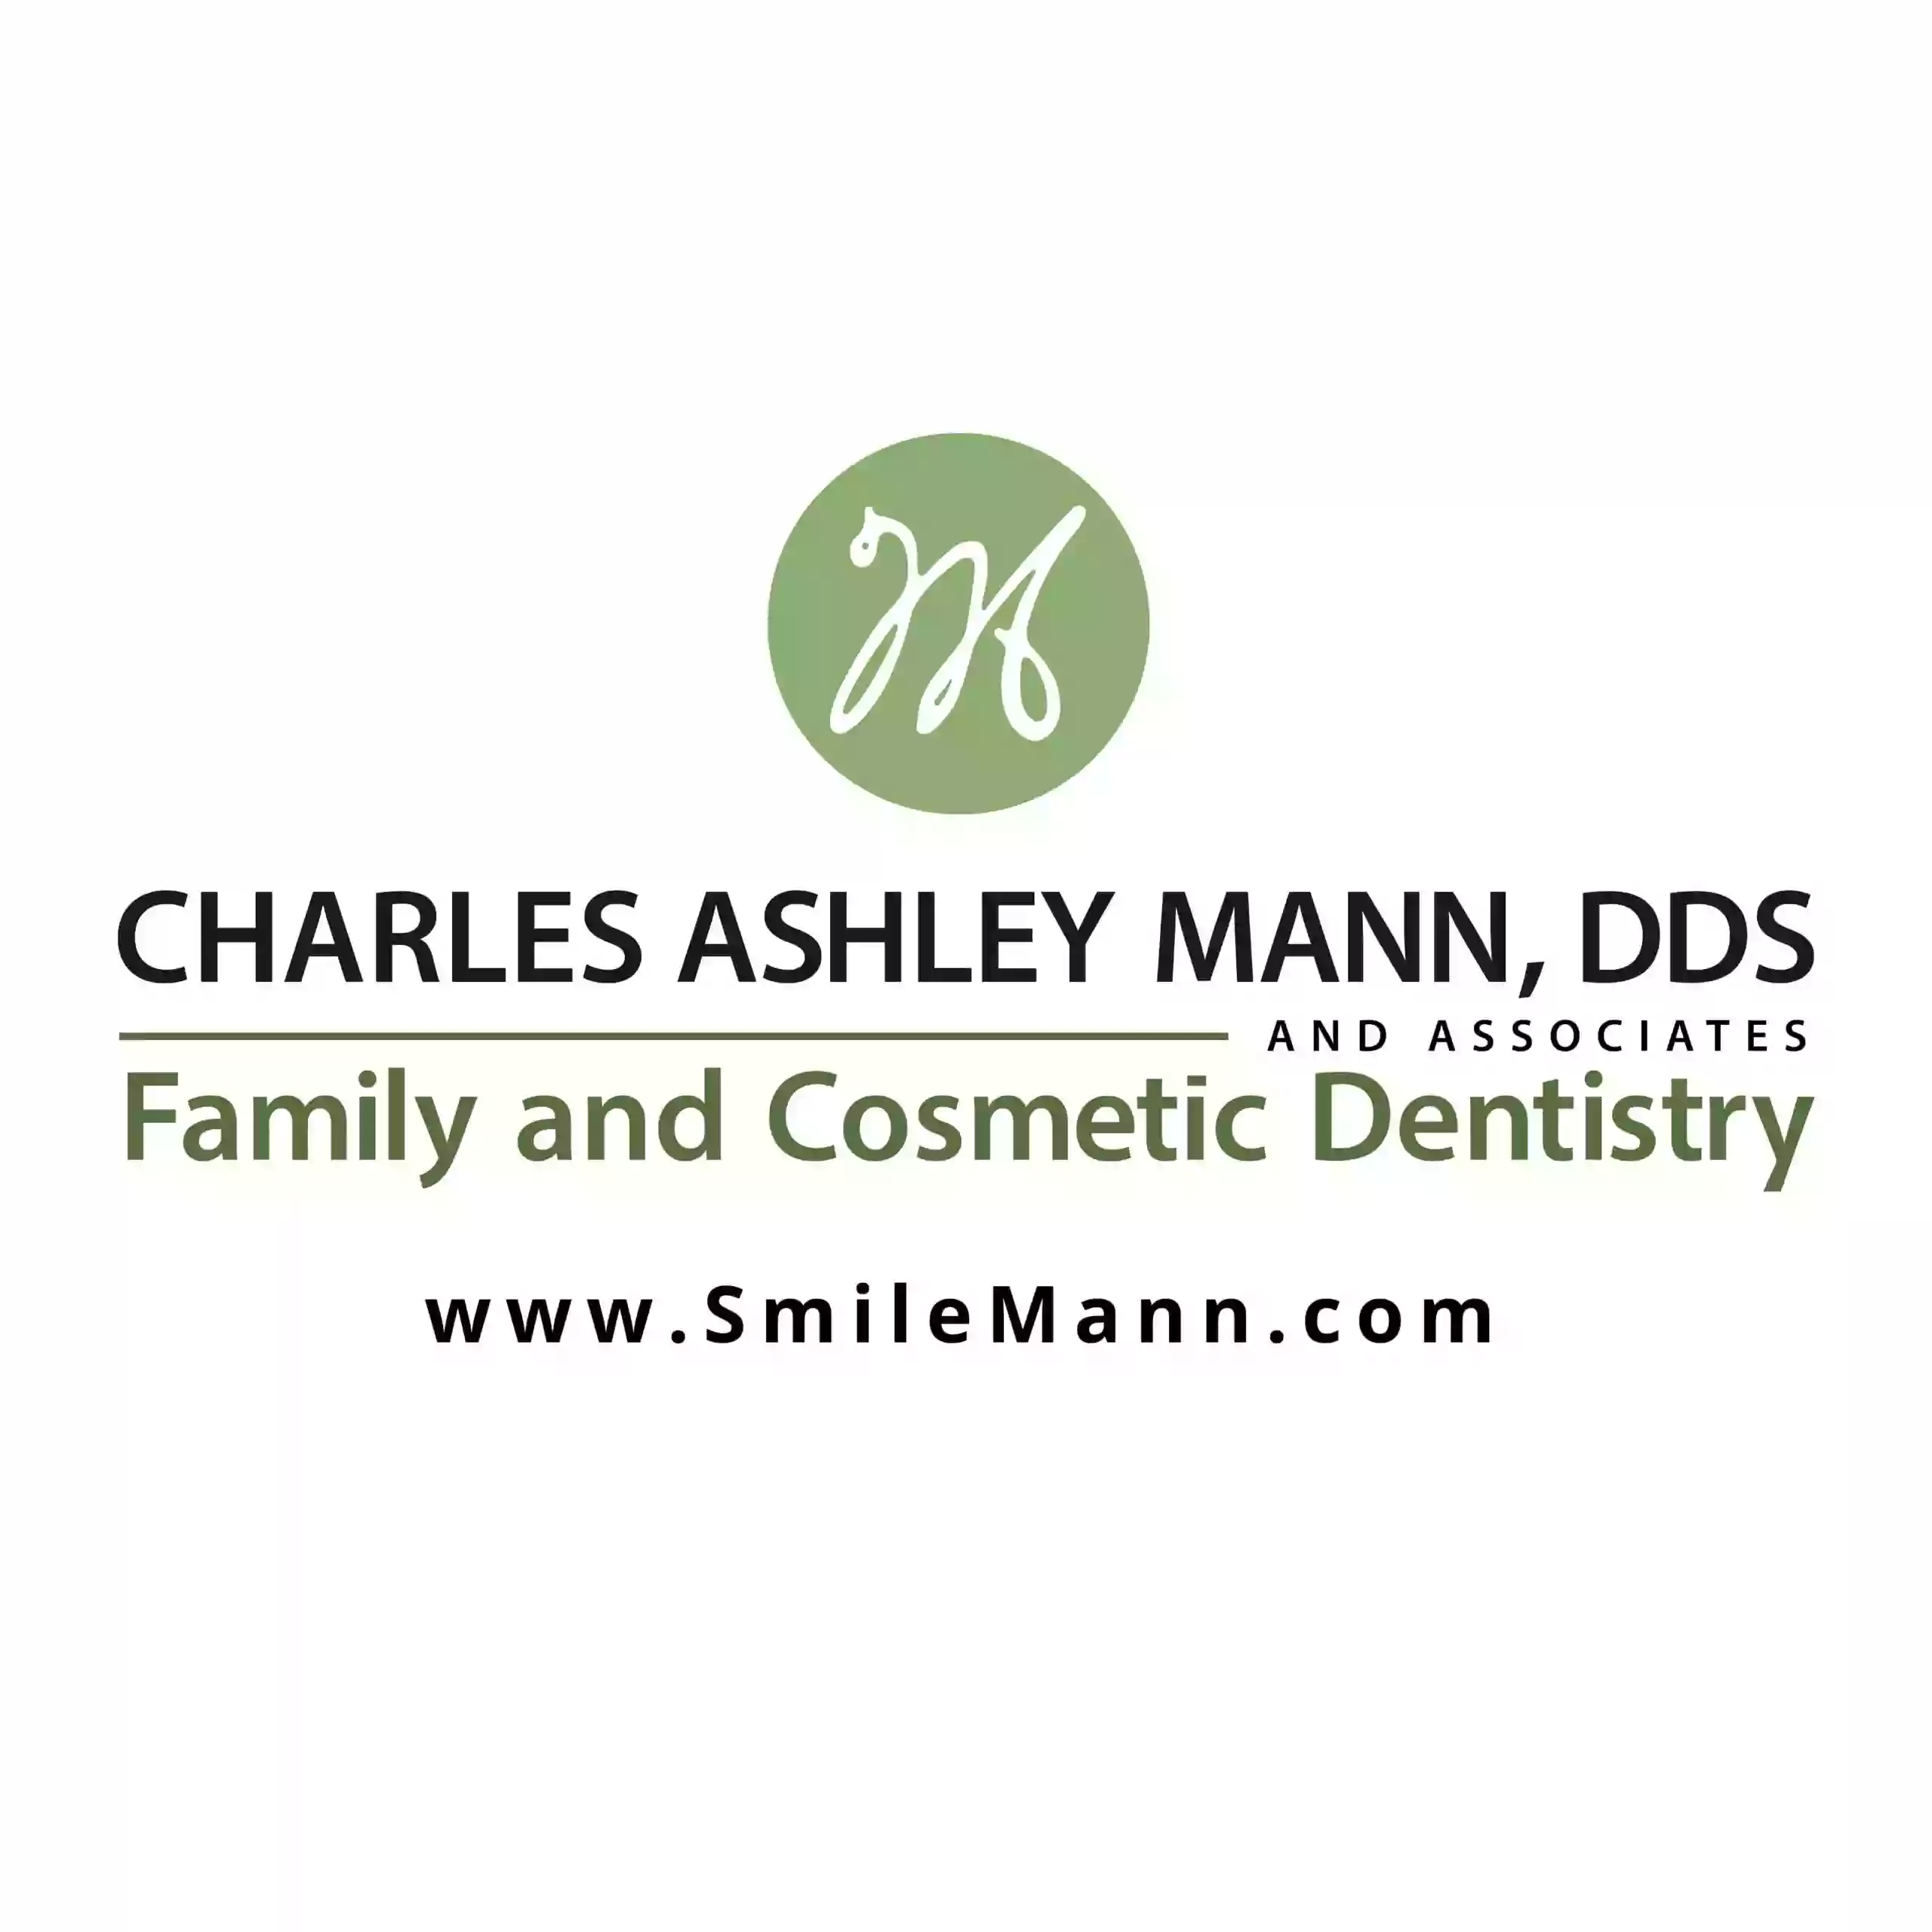 Charles Ashley Mann, DDS & Associates